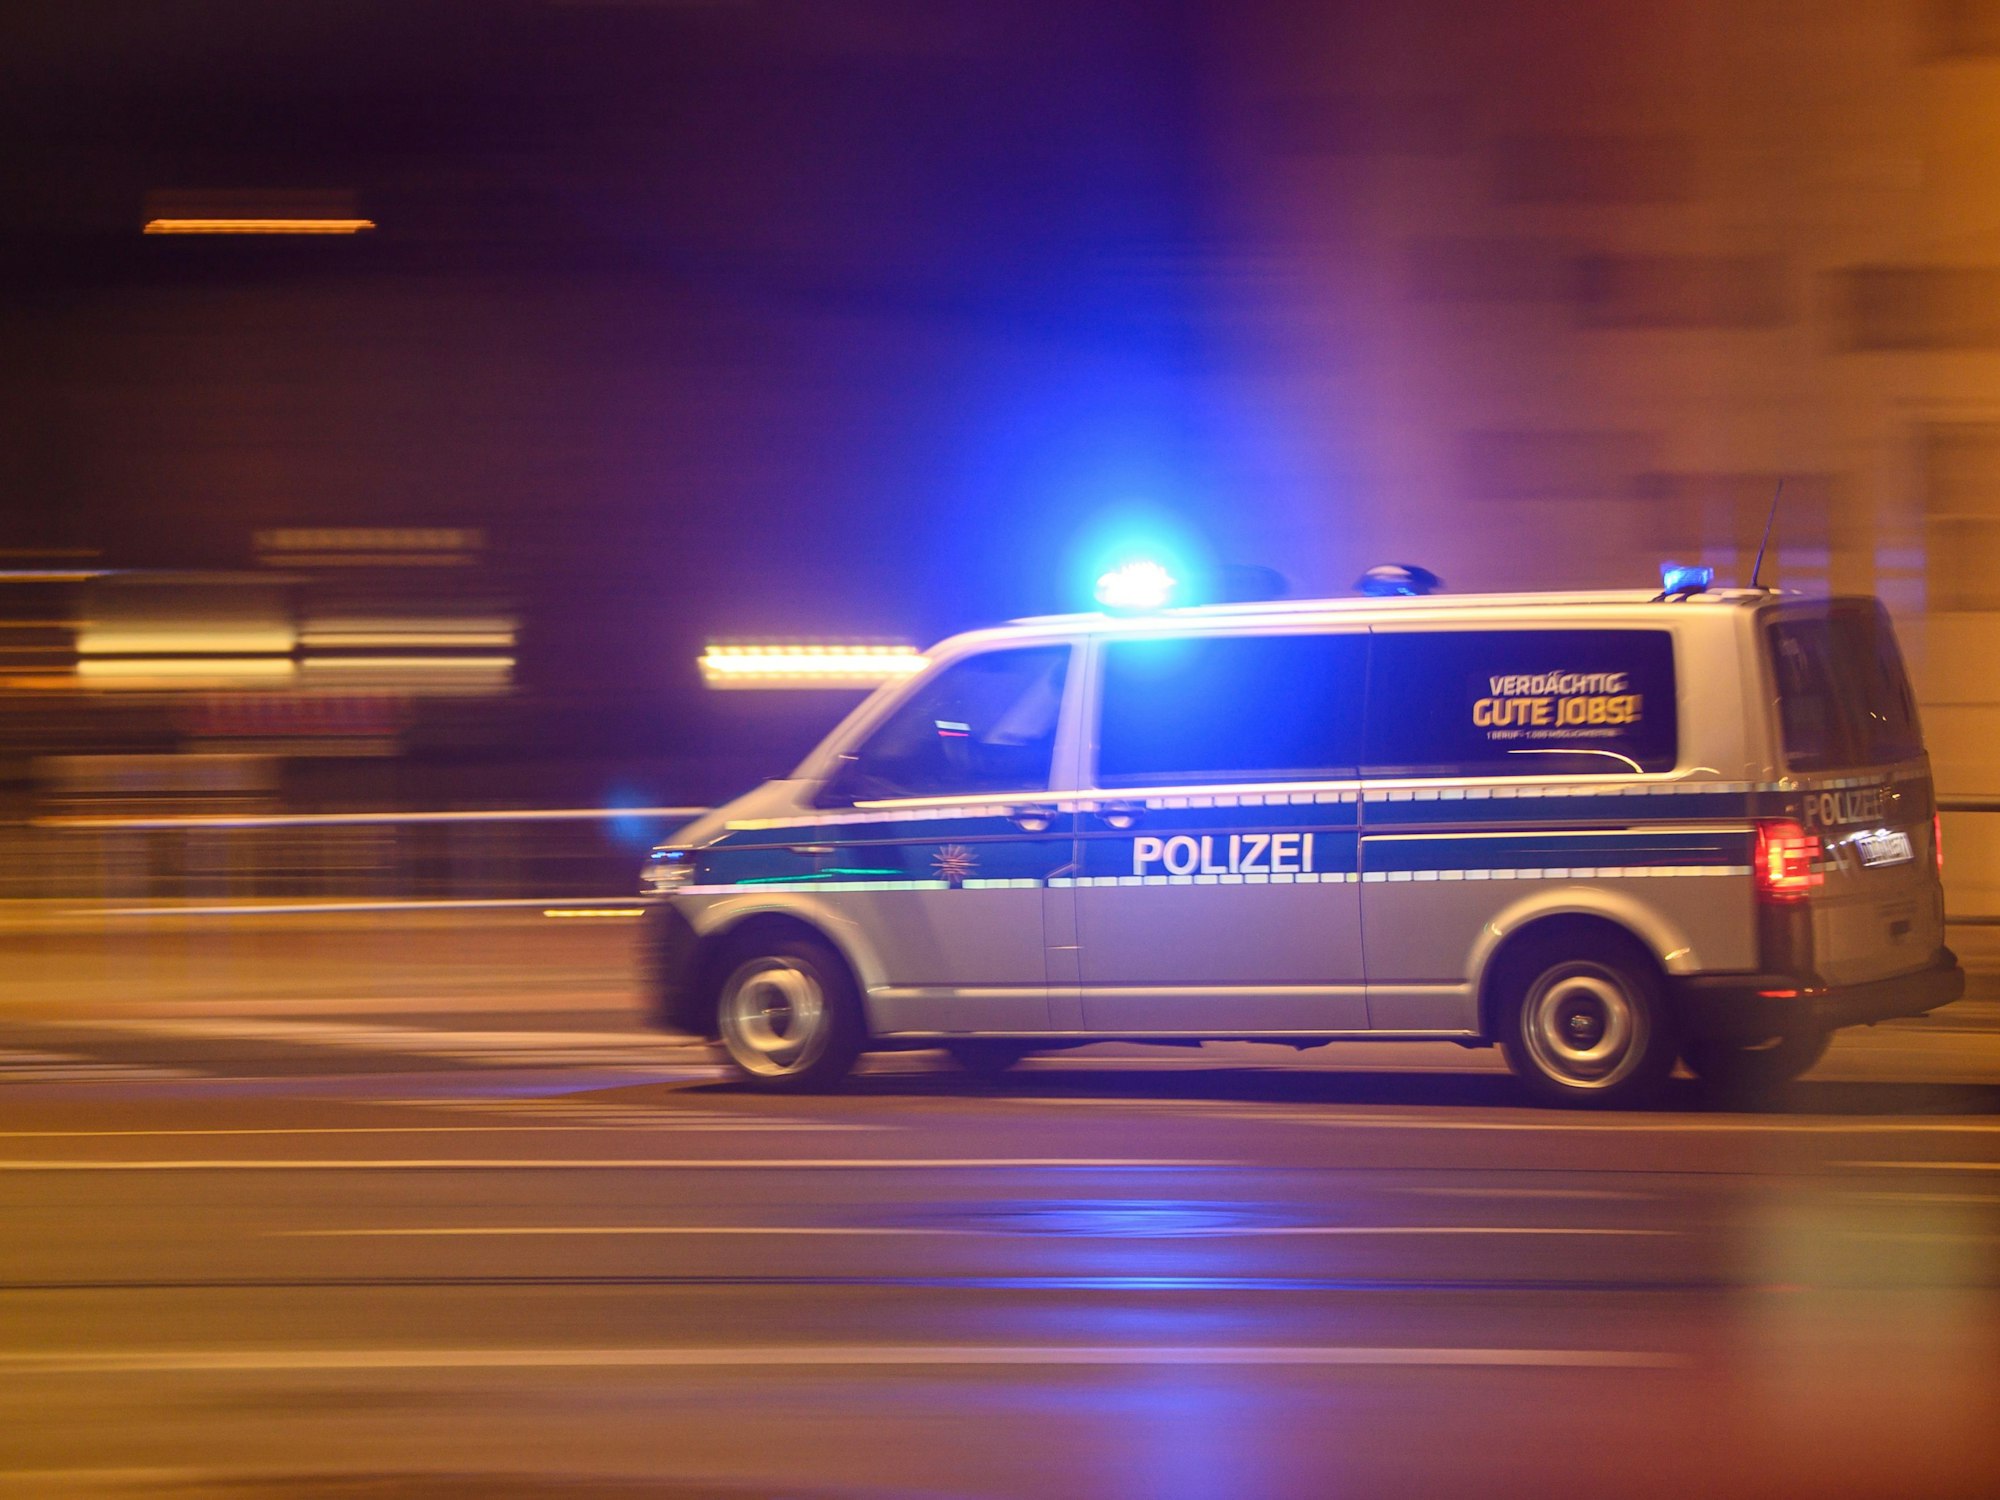 Inzwischen ist der Vermisste wieder aufgetaucht. Unser Symbolfoto zeigt einen Polizeiwagen mit Blaulicht bei einem Einsatz.